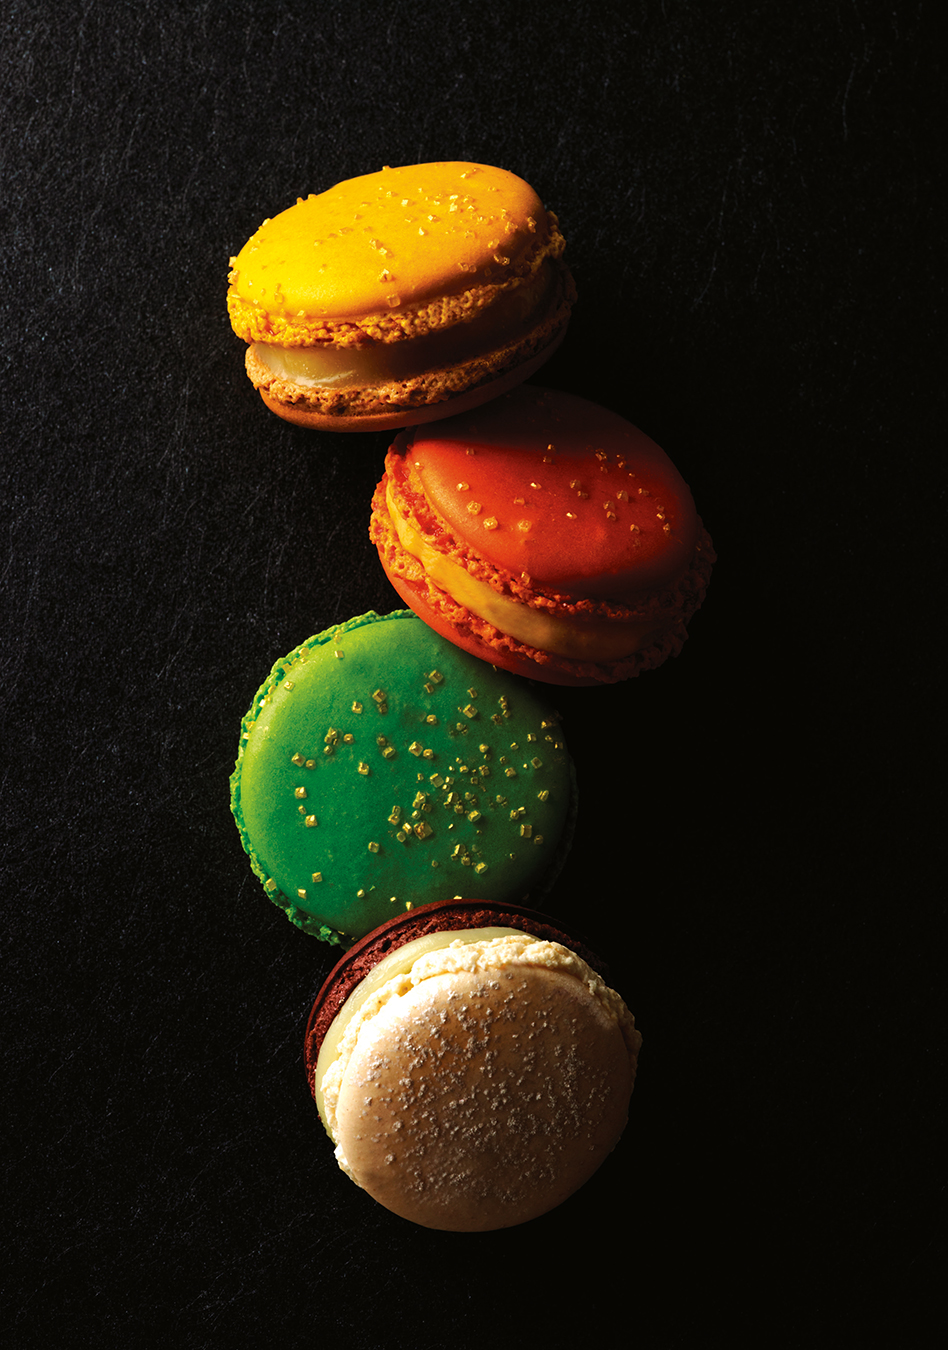 NUVO Magazine: The Macarons of Pierre Hermé